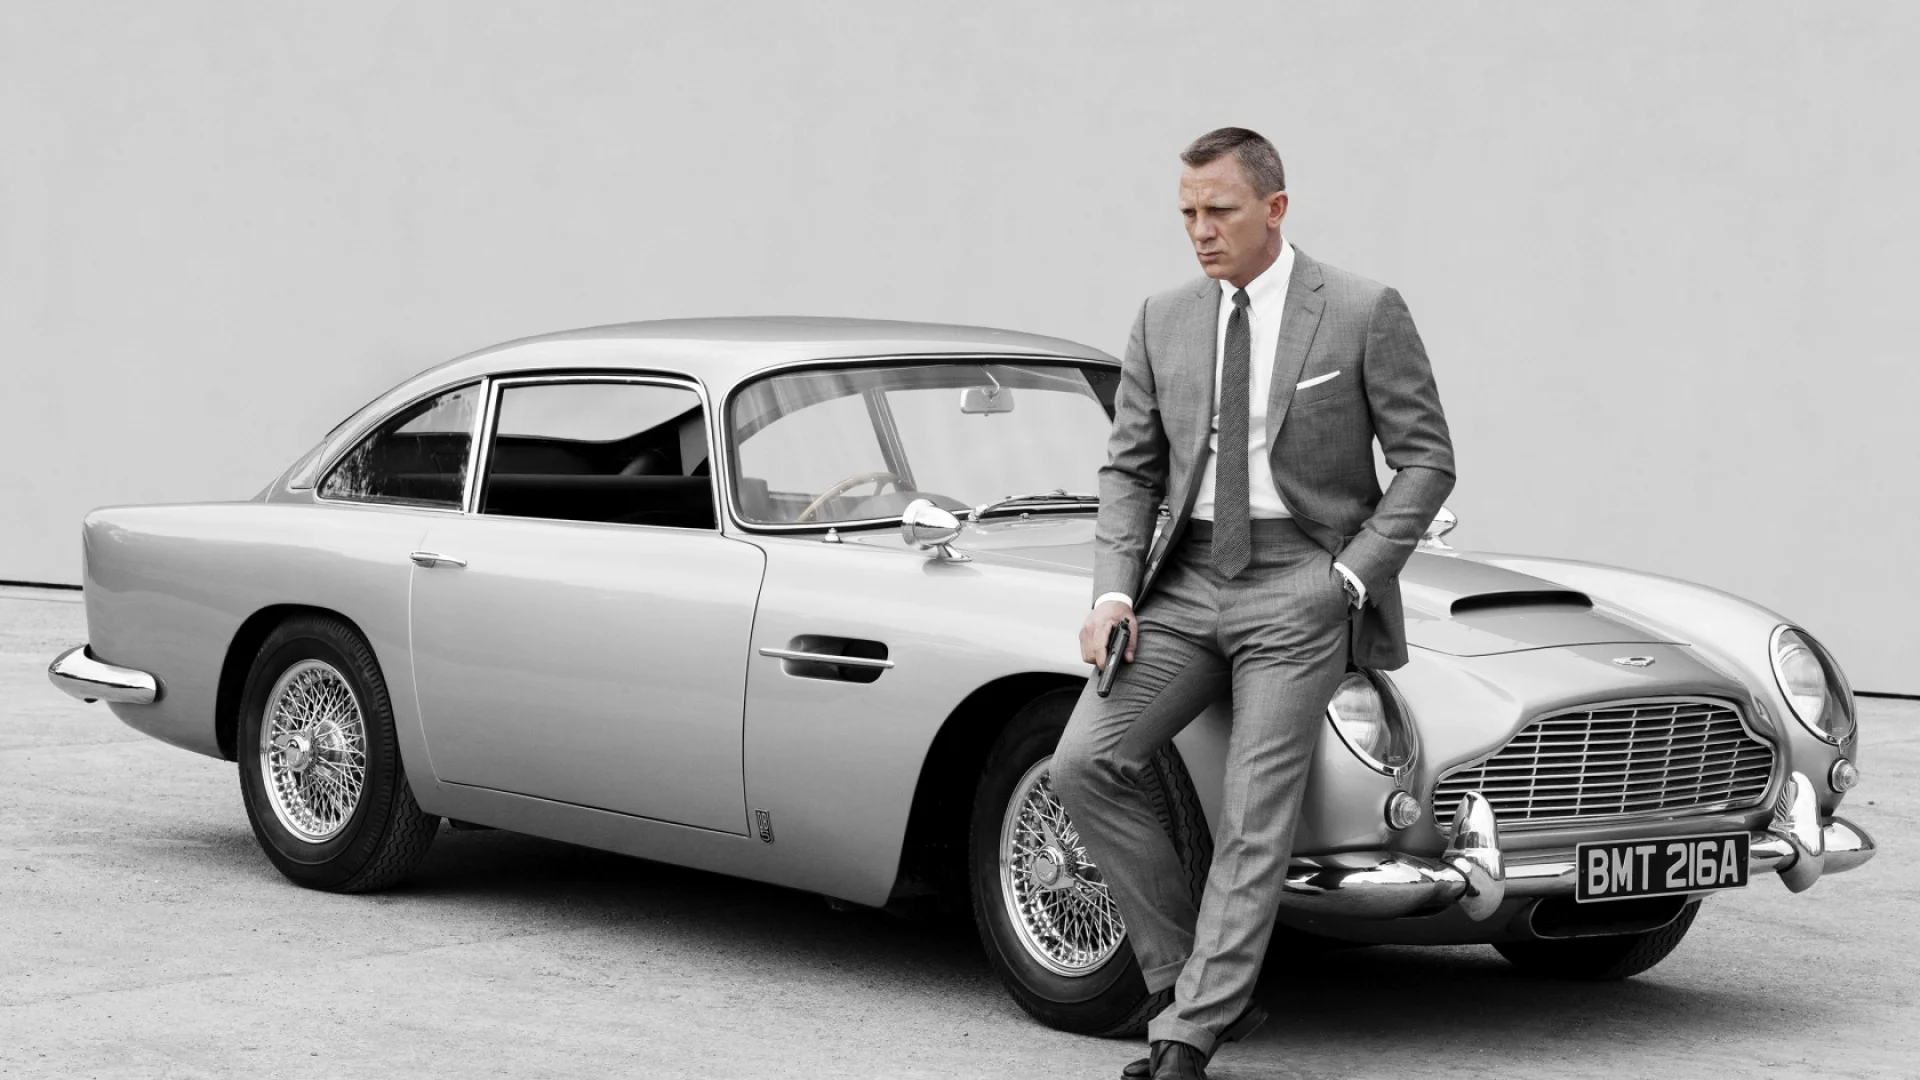 Владелец марки Aston Martin Дэвид Браун плевать хотел, знаете ли, на всю эту вашу киношную возню в целом и на агента 007 в частности. Он вложил в развитие английского бренда не только кошелек, но и душу, и обоснованно считал свое предприятие вполне самодостаточным: Aston Martin к началу шестидесятых не нуждался ни в какой рекламе, а уж тем более — в рекламе при помощи третьеразрядных боевичков. Однако…